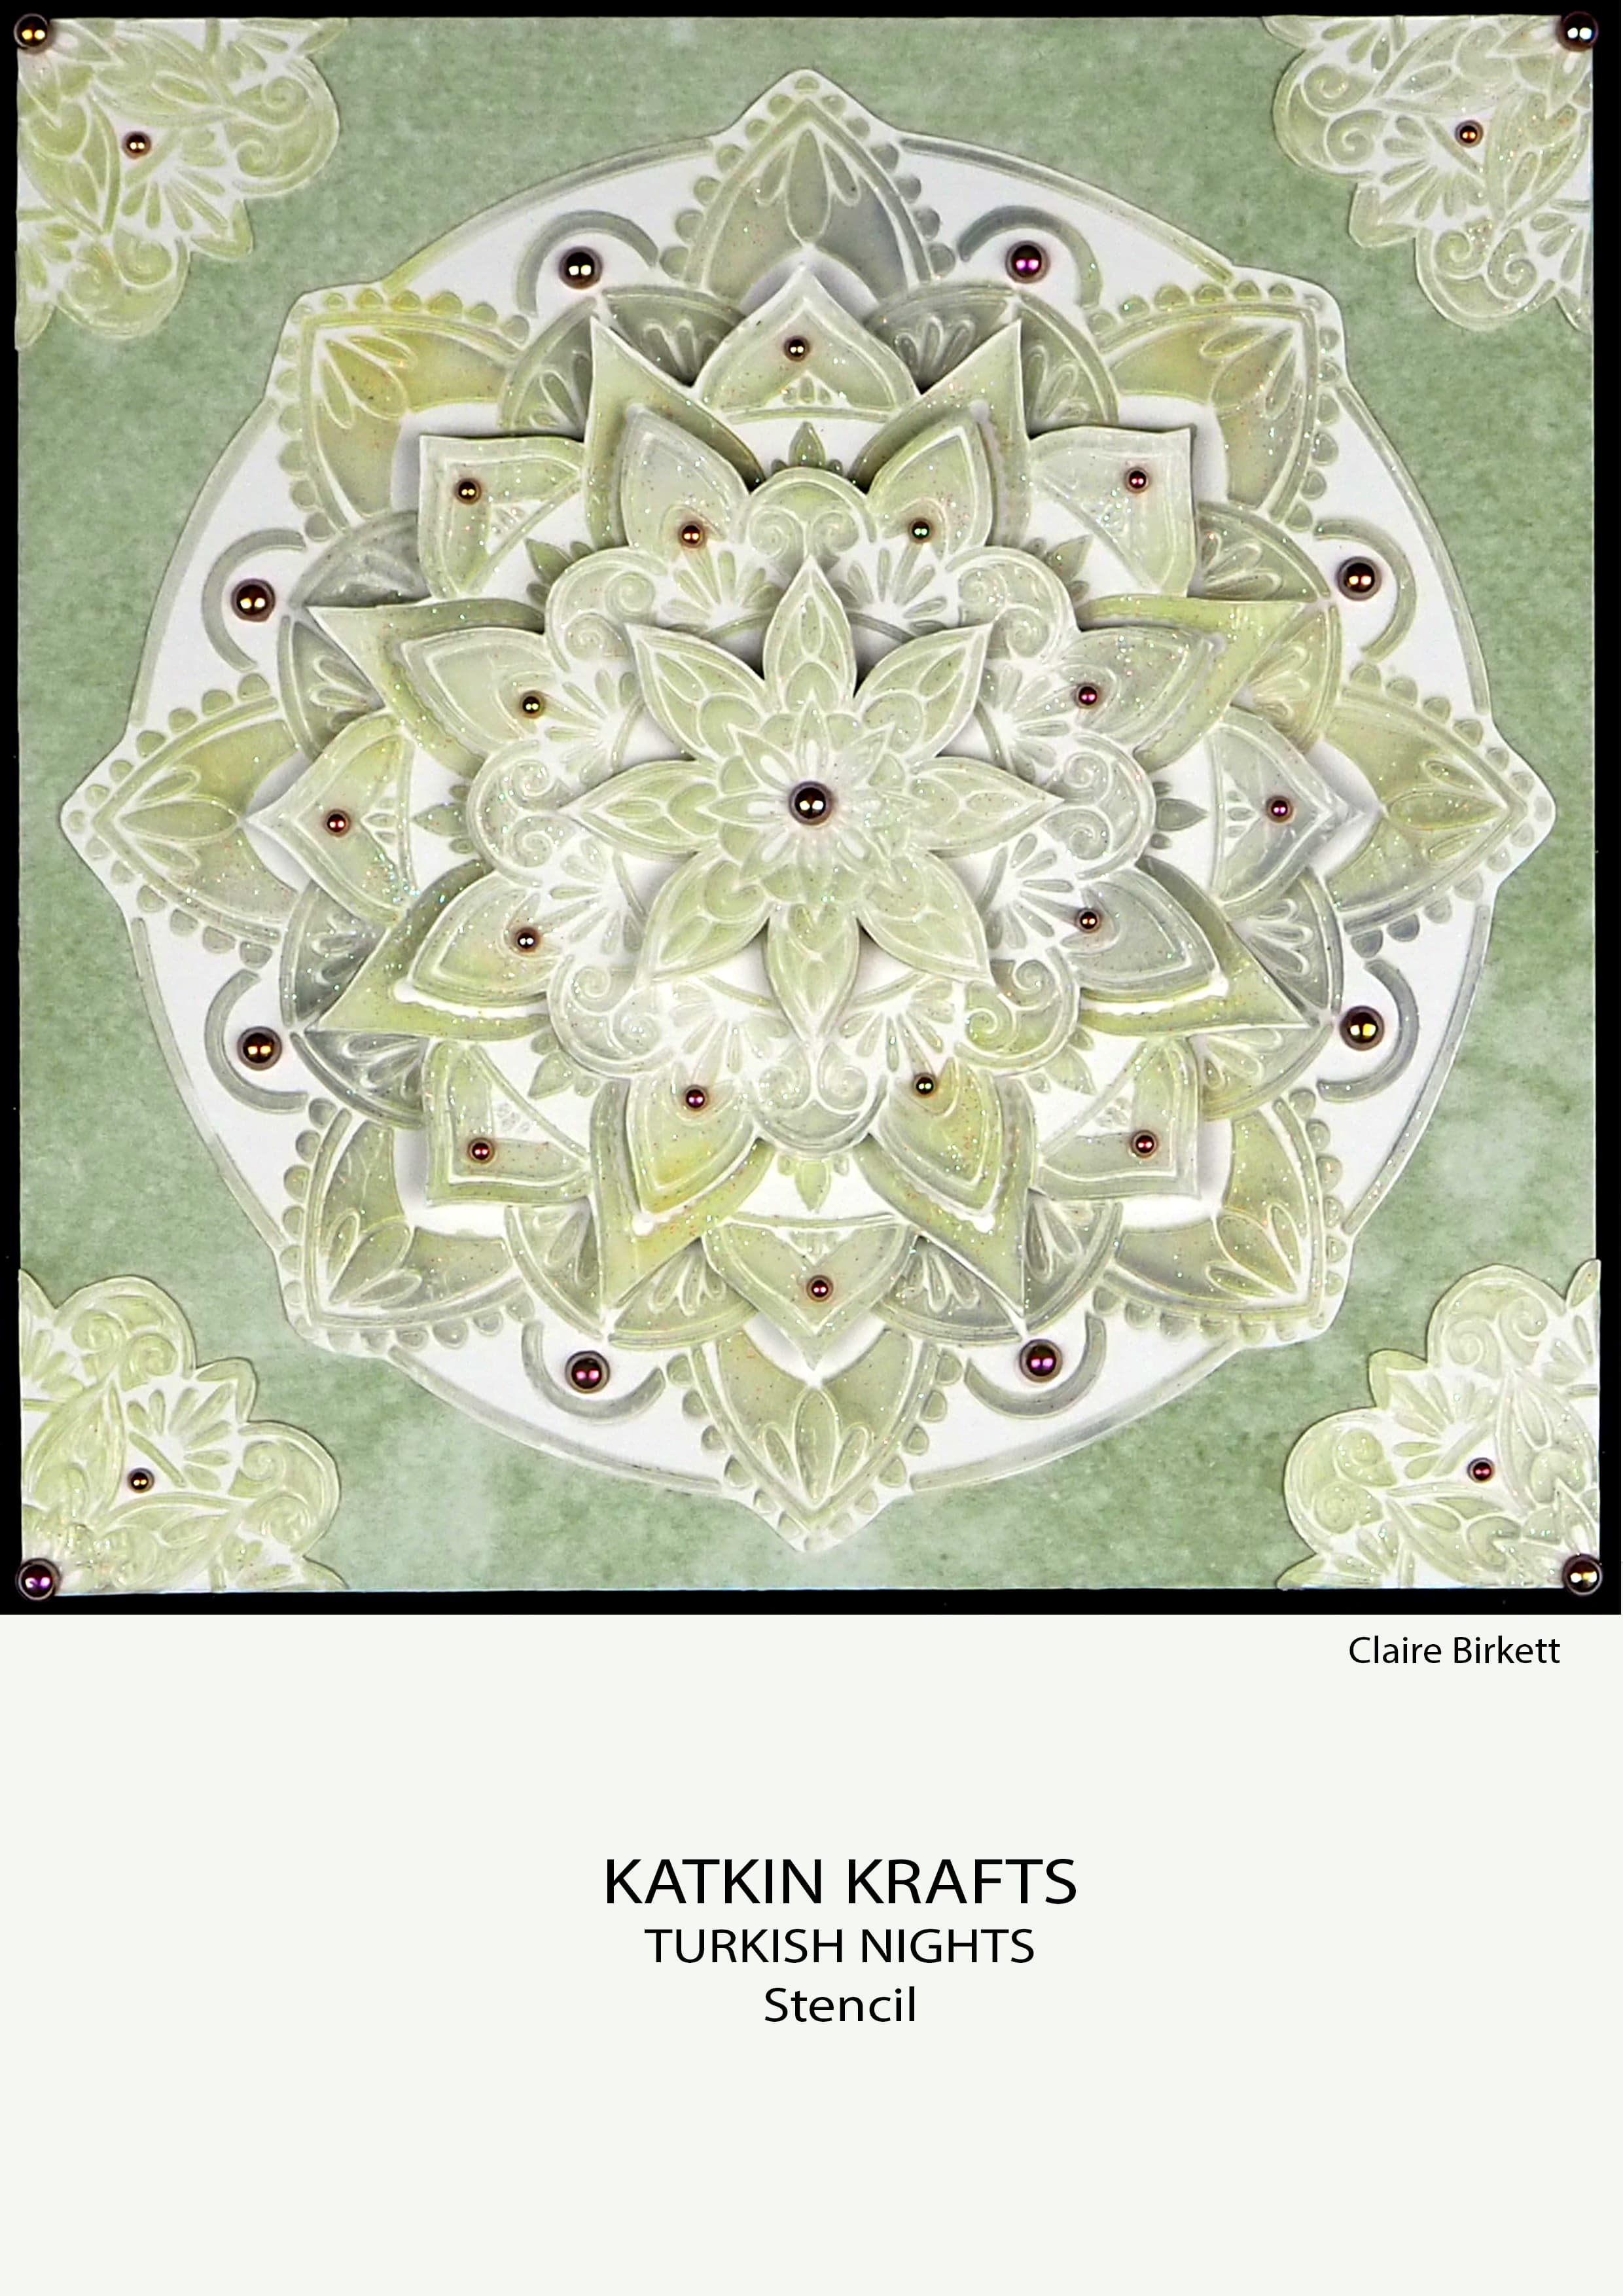 Katkin Krafts Turkish Nights 7 in x 7 in Stencil